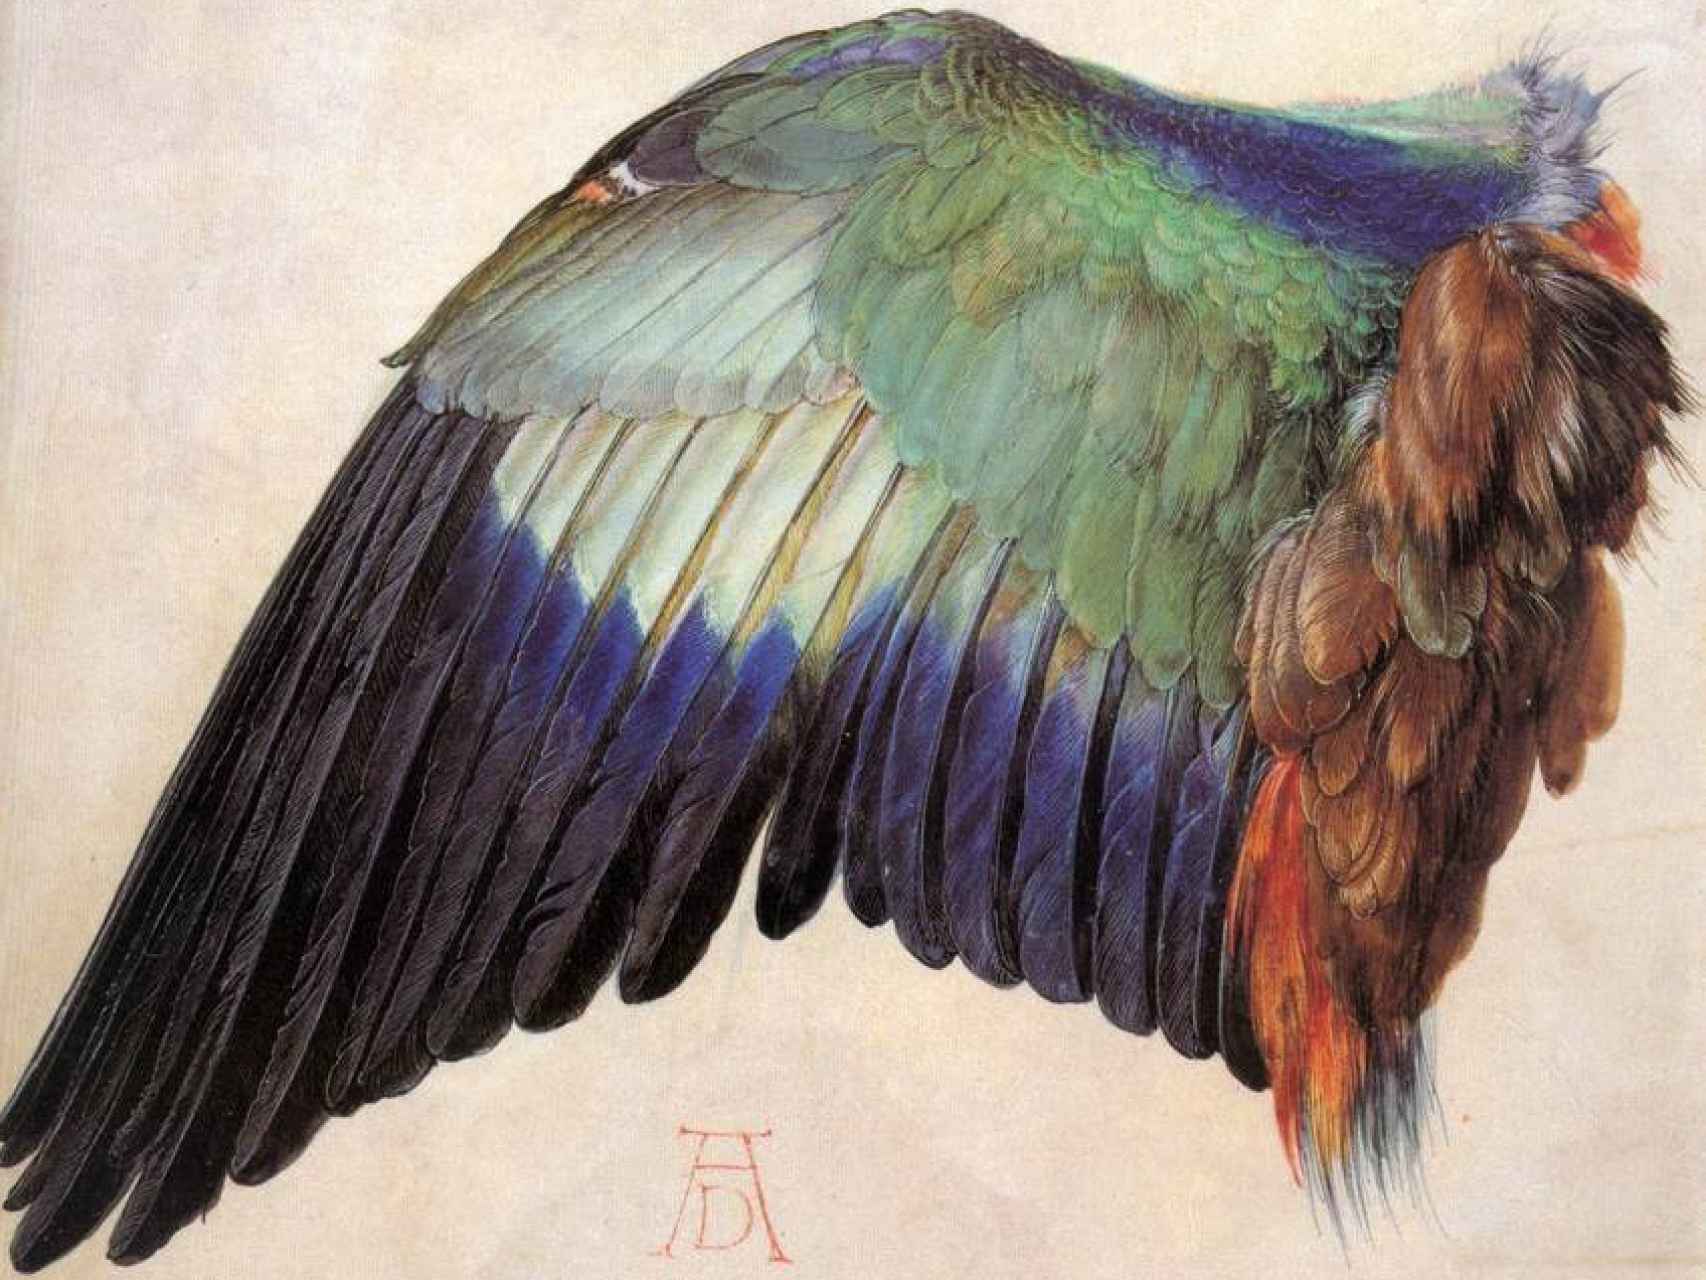 Acuarela del ala desplegada de una carraca, por Alberto Durero.